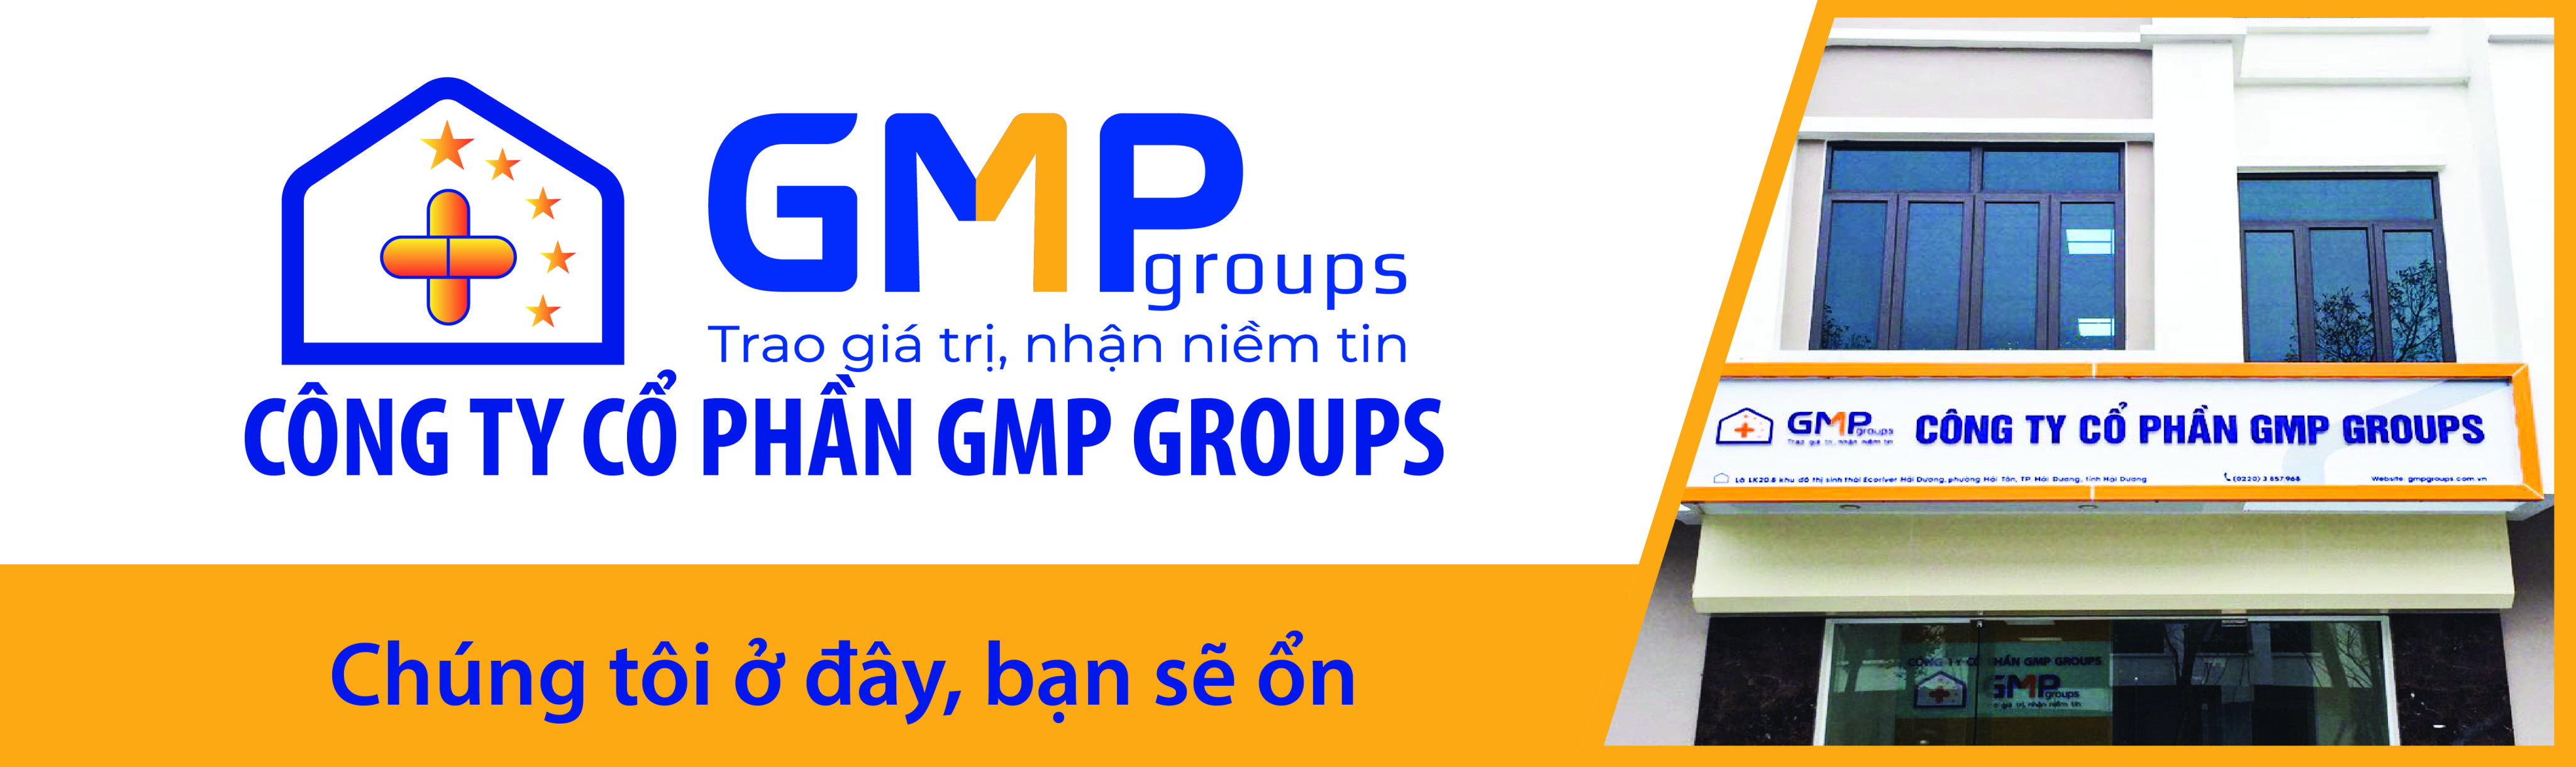 Dịch vụ tư vấn đào tạo GMP, tiêu chuẩn ISO/GXP - GMP Groups